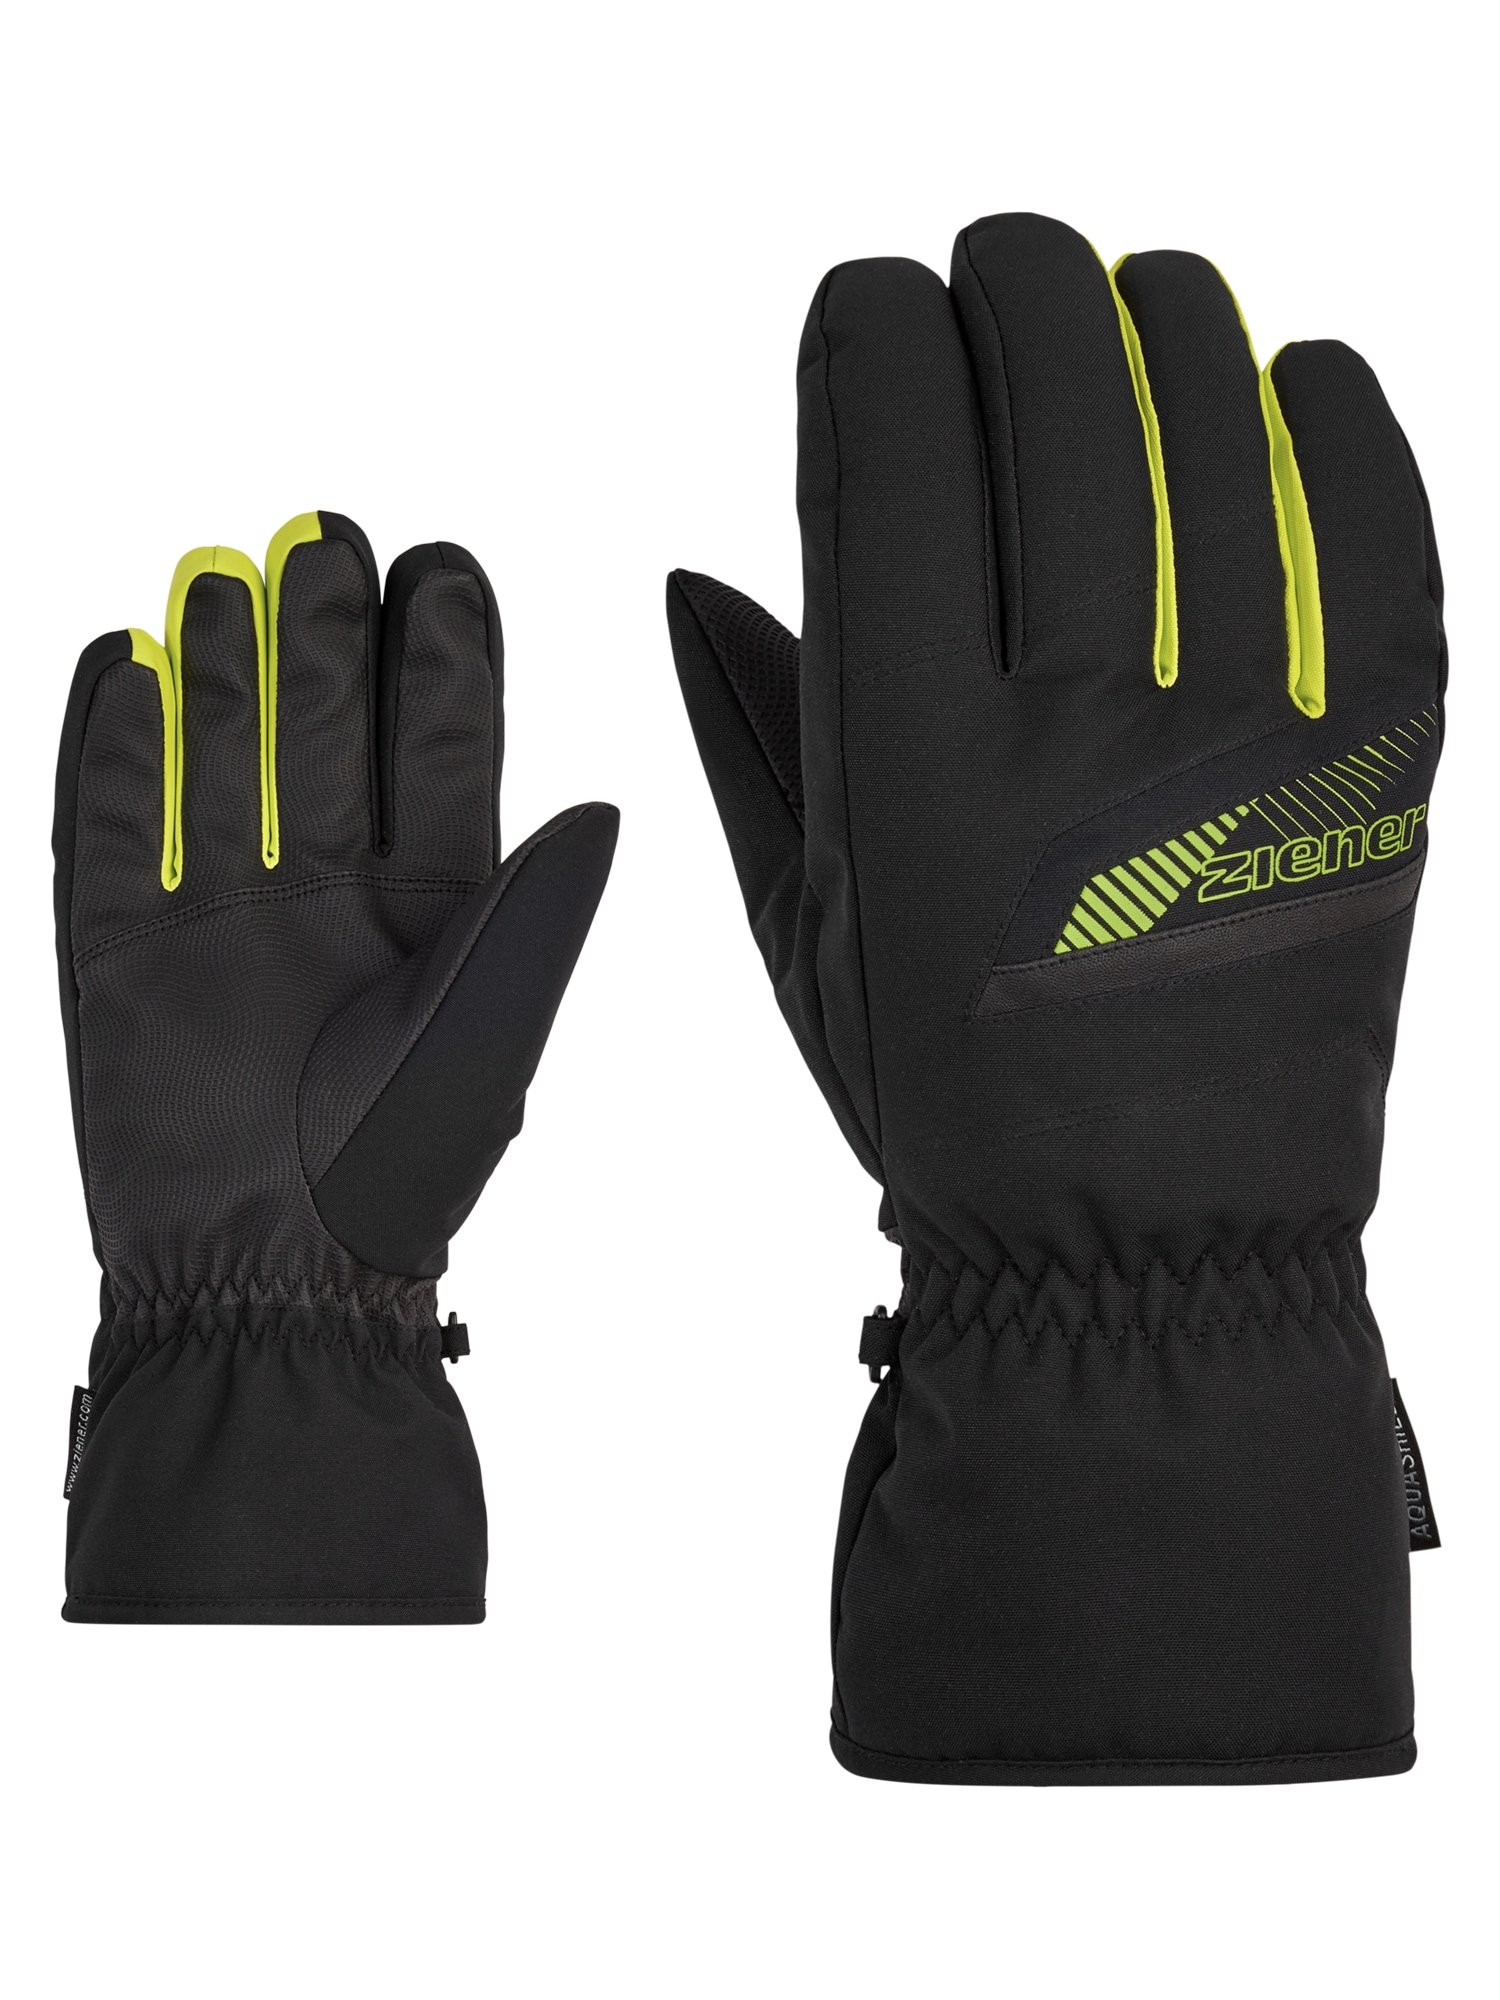 Jetzt Ski Handschuhe für den Sport online shoppen | OTTO